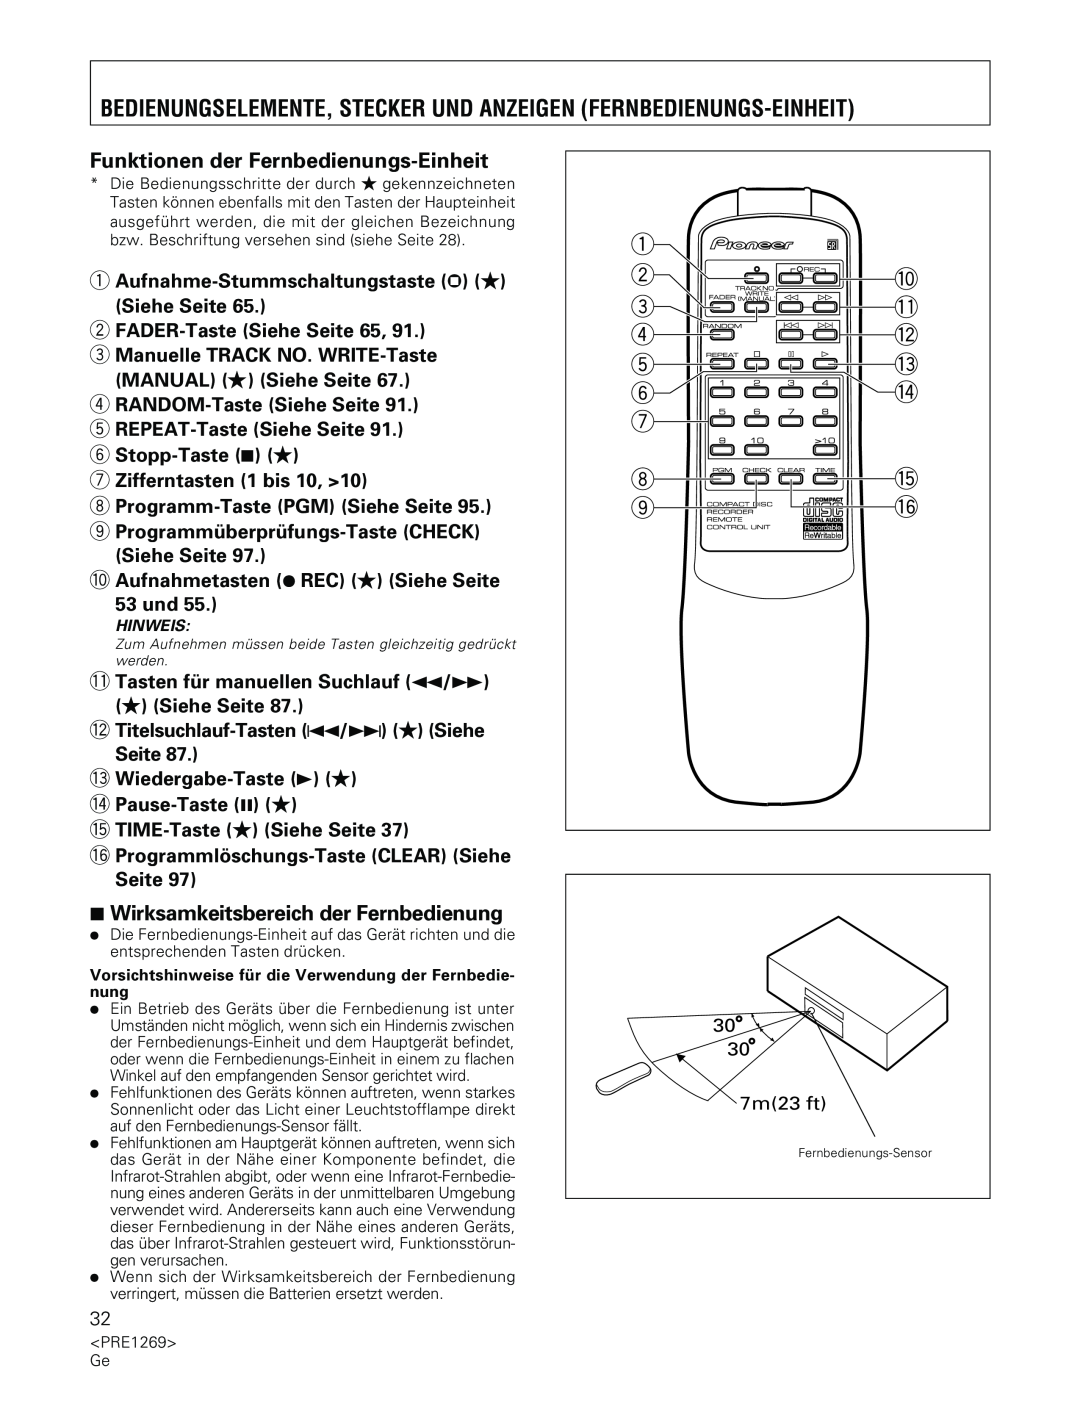 Pioneer PDR-555RW operating instructions Funktionen der Fernbedienungs-Einheit, 7Wirksamkeitsbereich der Fernbedienung 